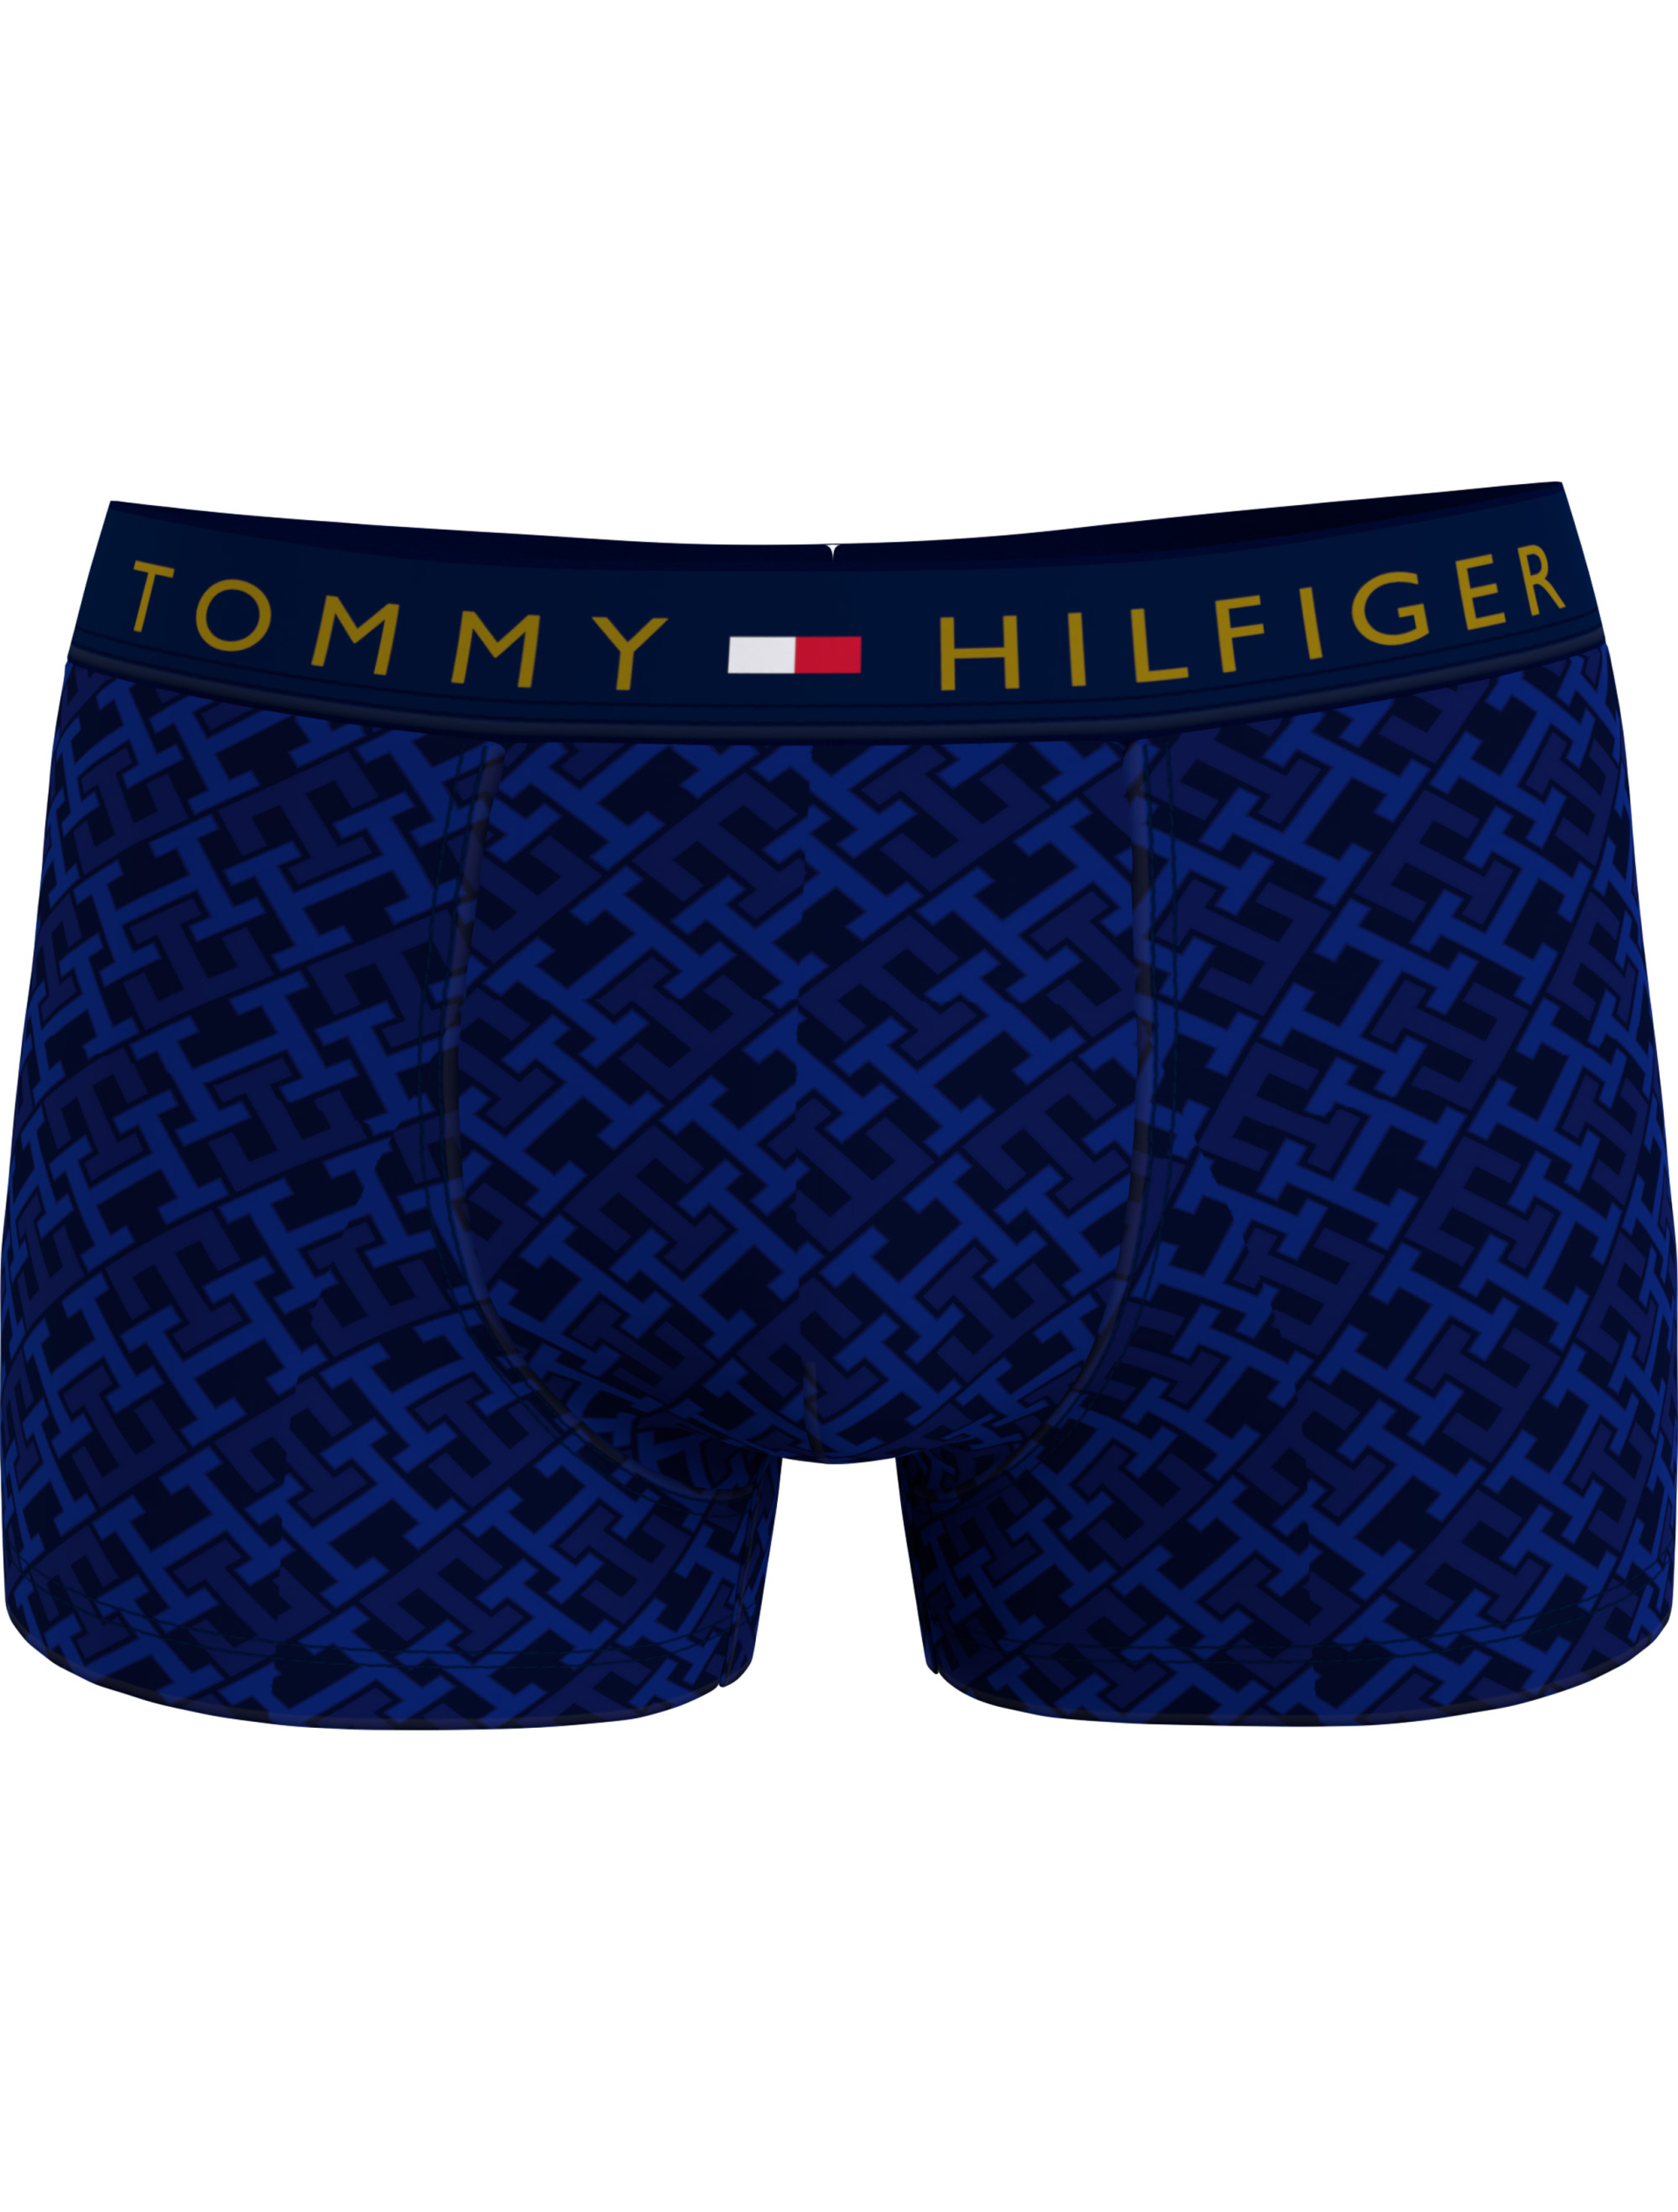 Tommy Hilfiger Tights blå / 0kg navy